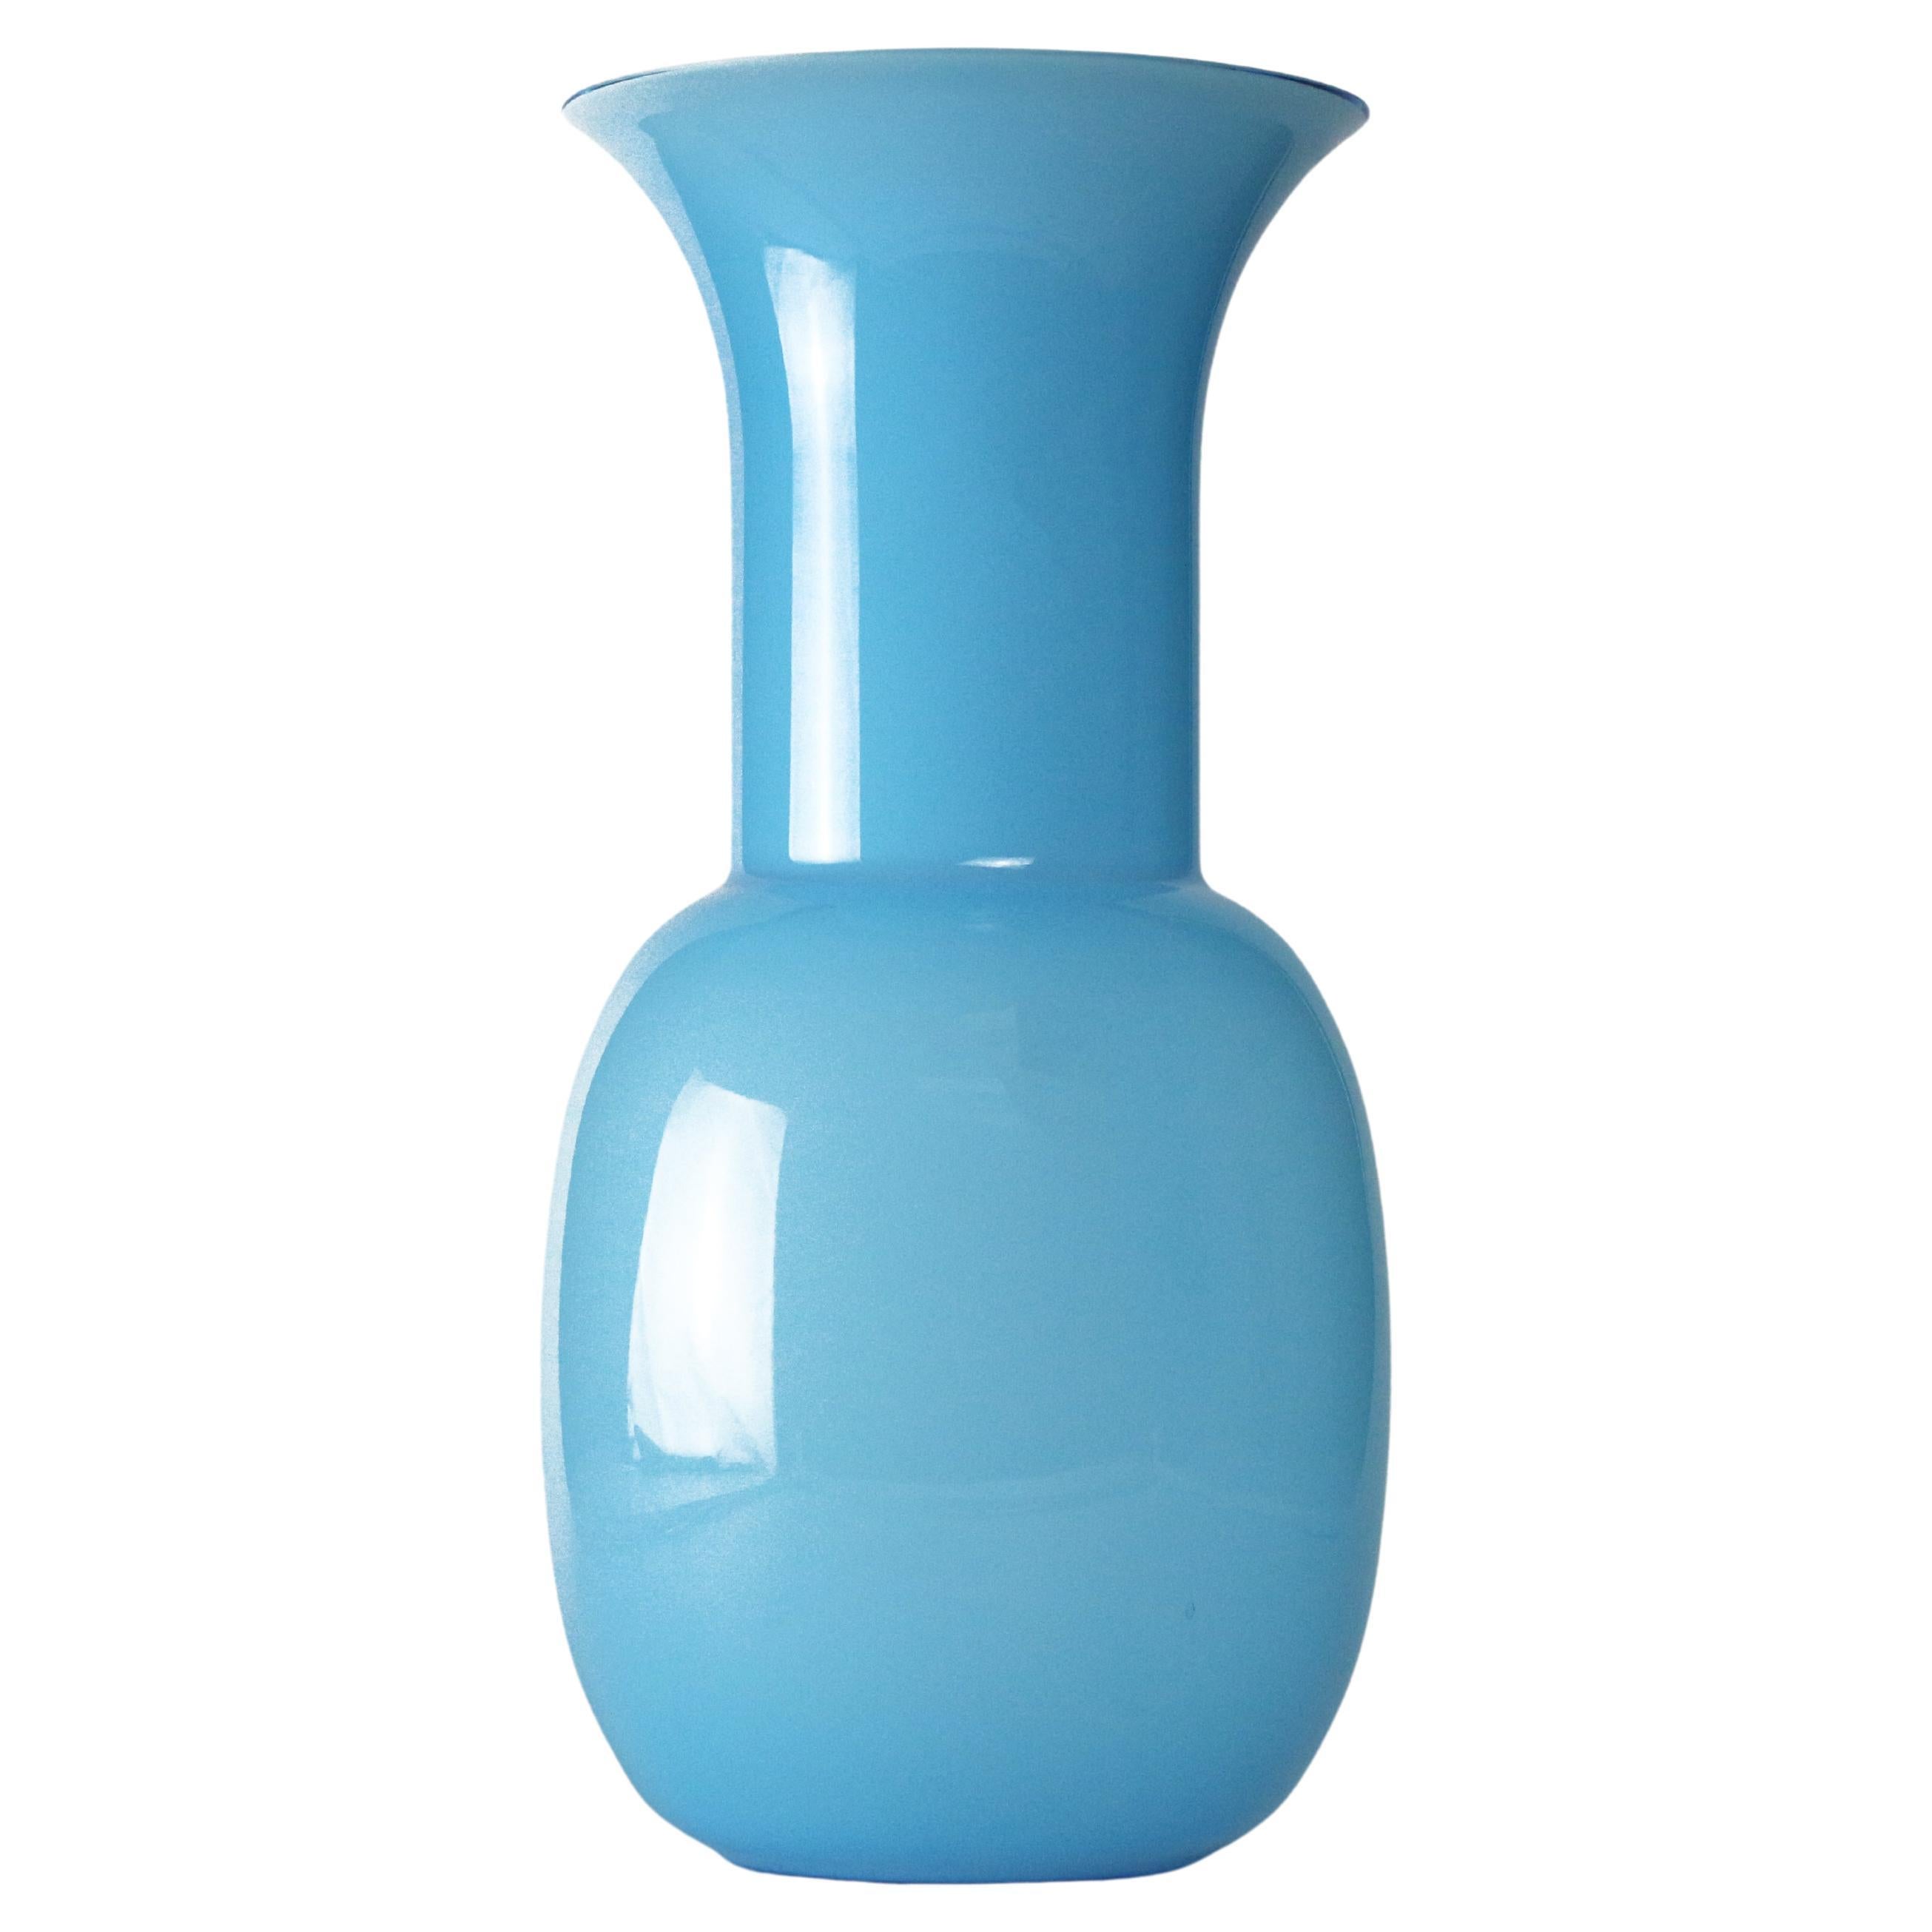 Lovely swedish brutalist vase  sculptural vase turquoiseblue glass vase  11 x 3 12  Sweden